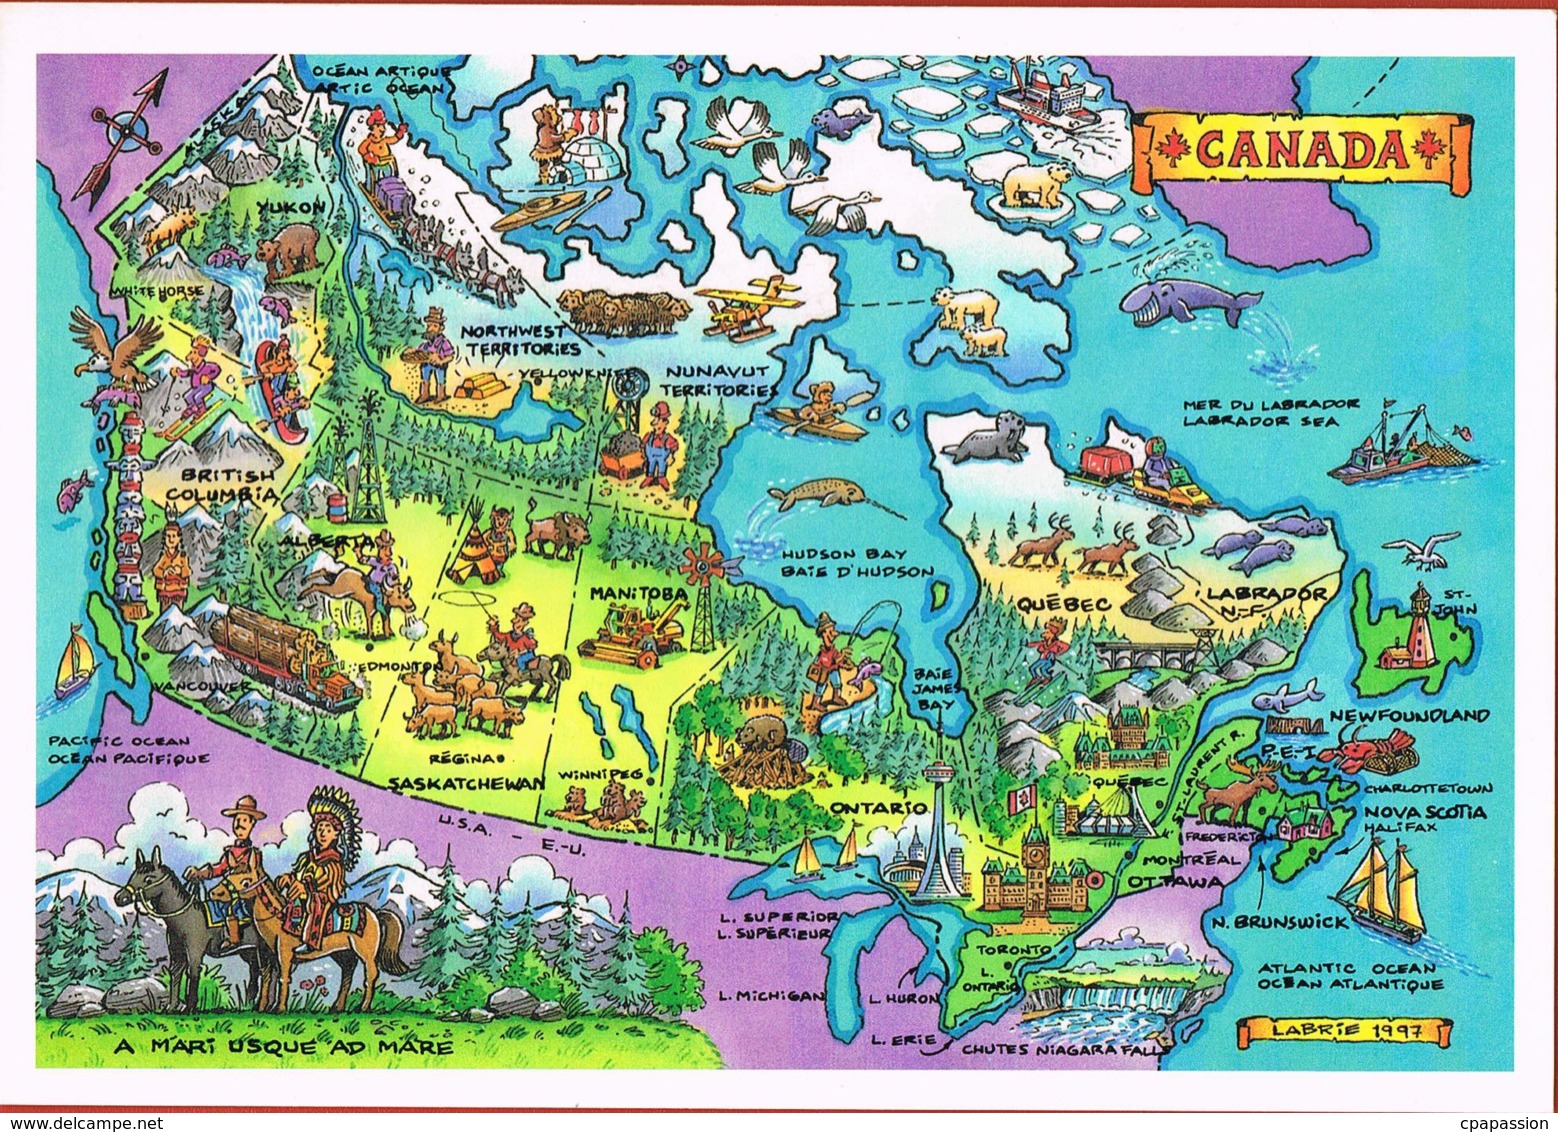 CANADA - Le Canada Et Ses Provinces-Carte Géographique  - Format 17 X 12 Cm- Illust A.LABRIE--scans Recto Verso- - Cartes Modernes